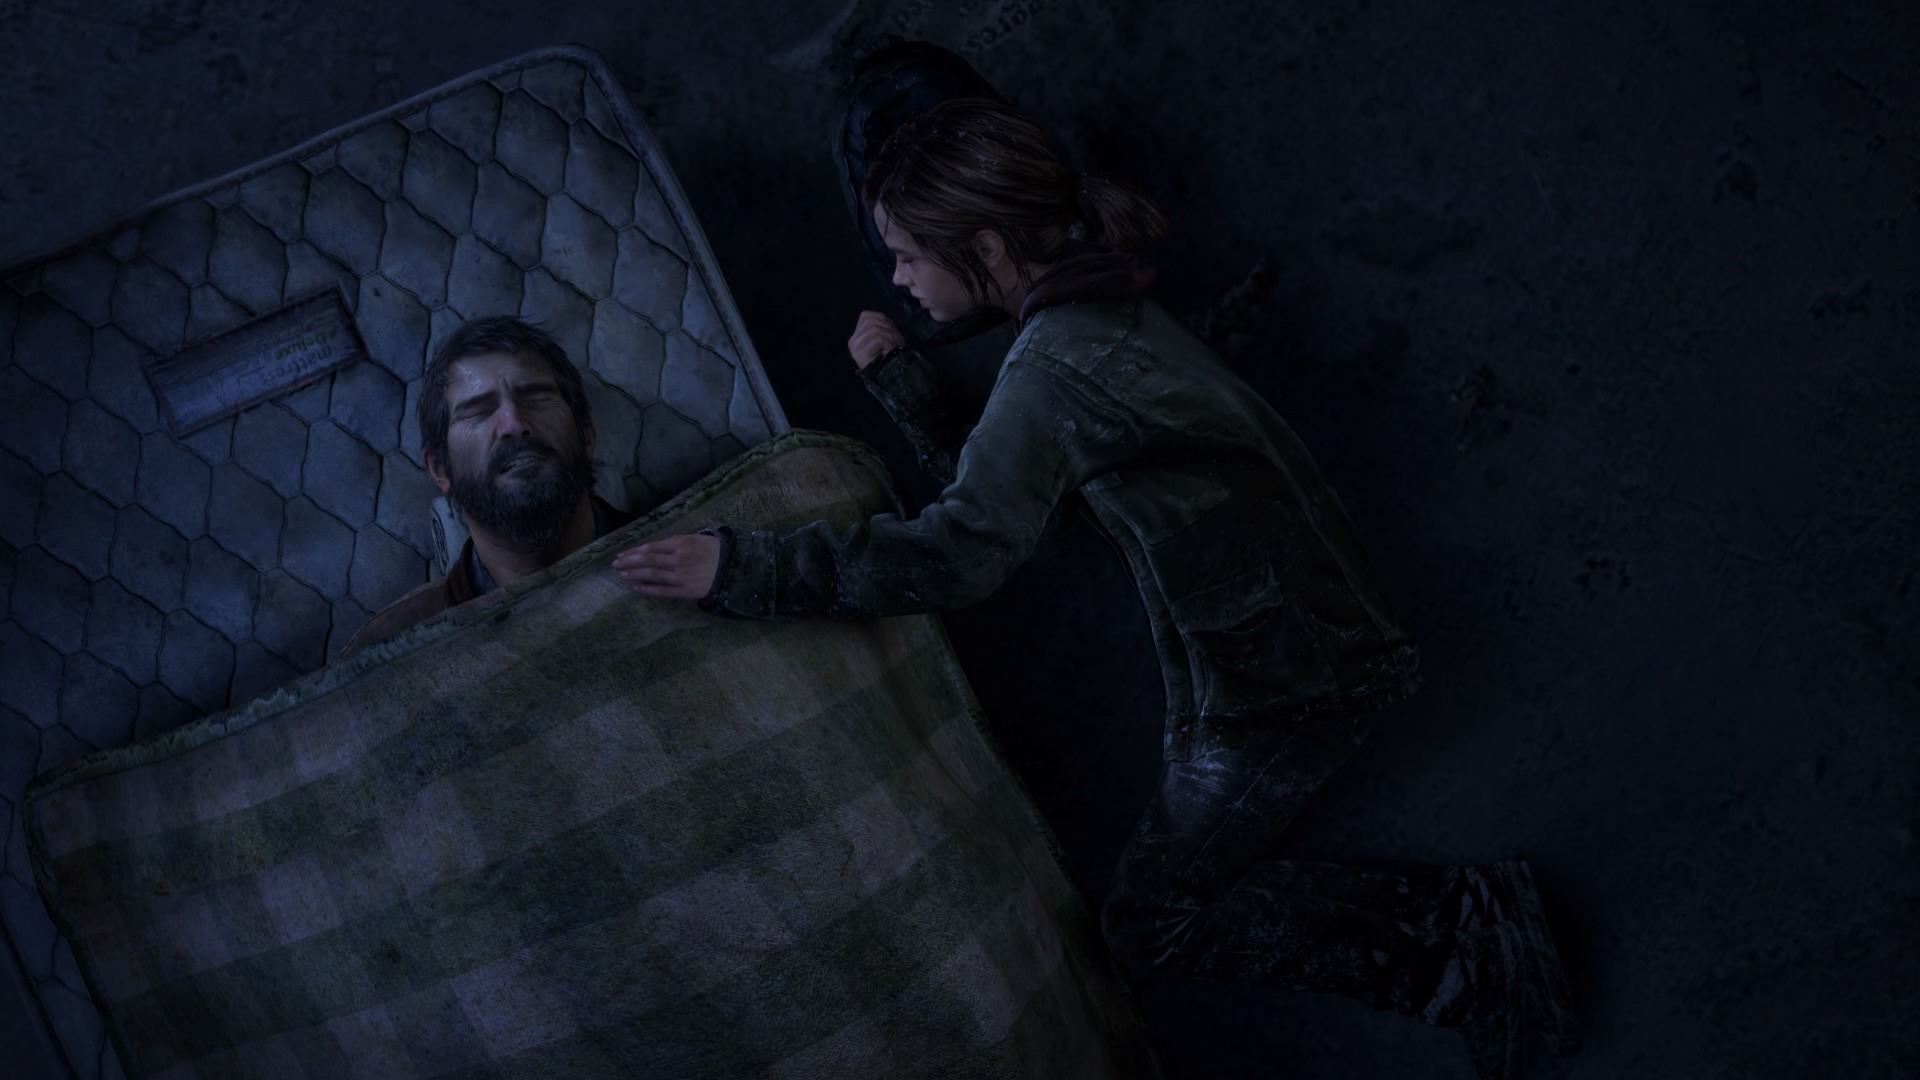 General 1920x1080 The Last of Us Ellie Williams Joel Miller sleeping screen shot CGI video games video game characters